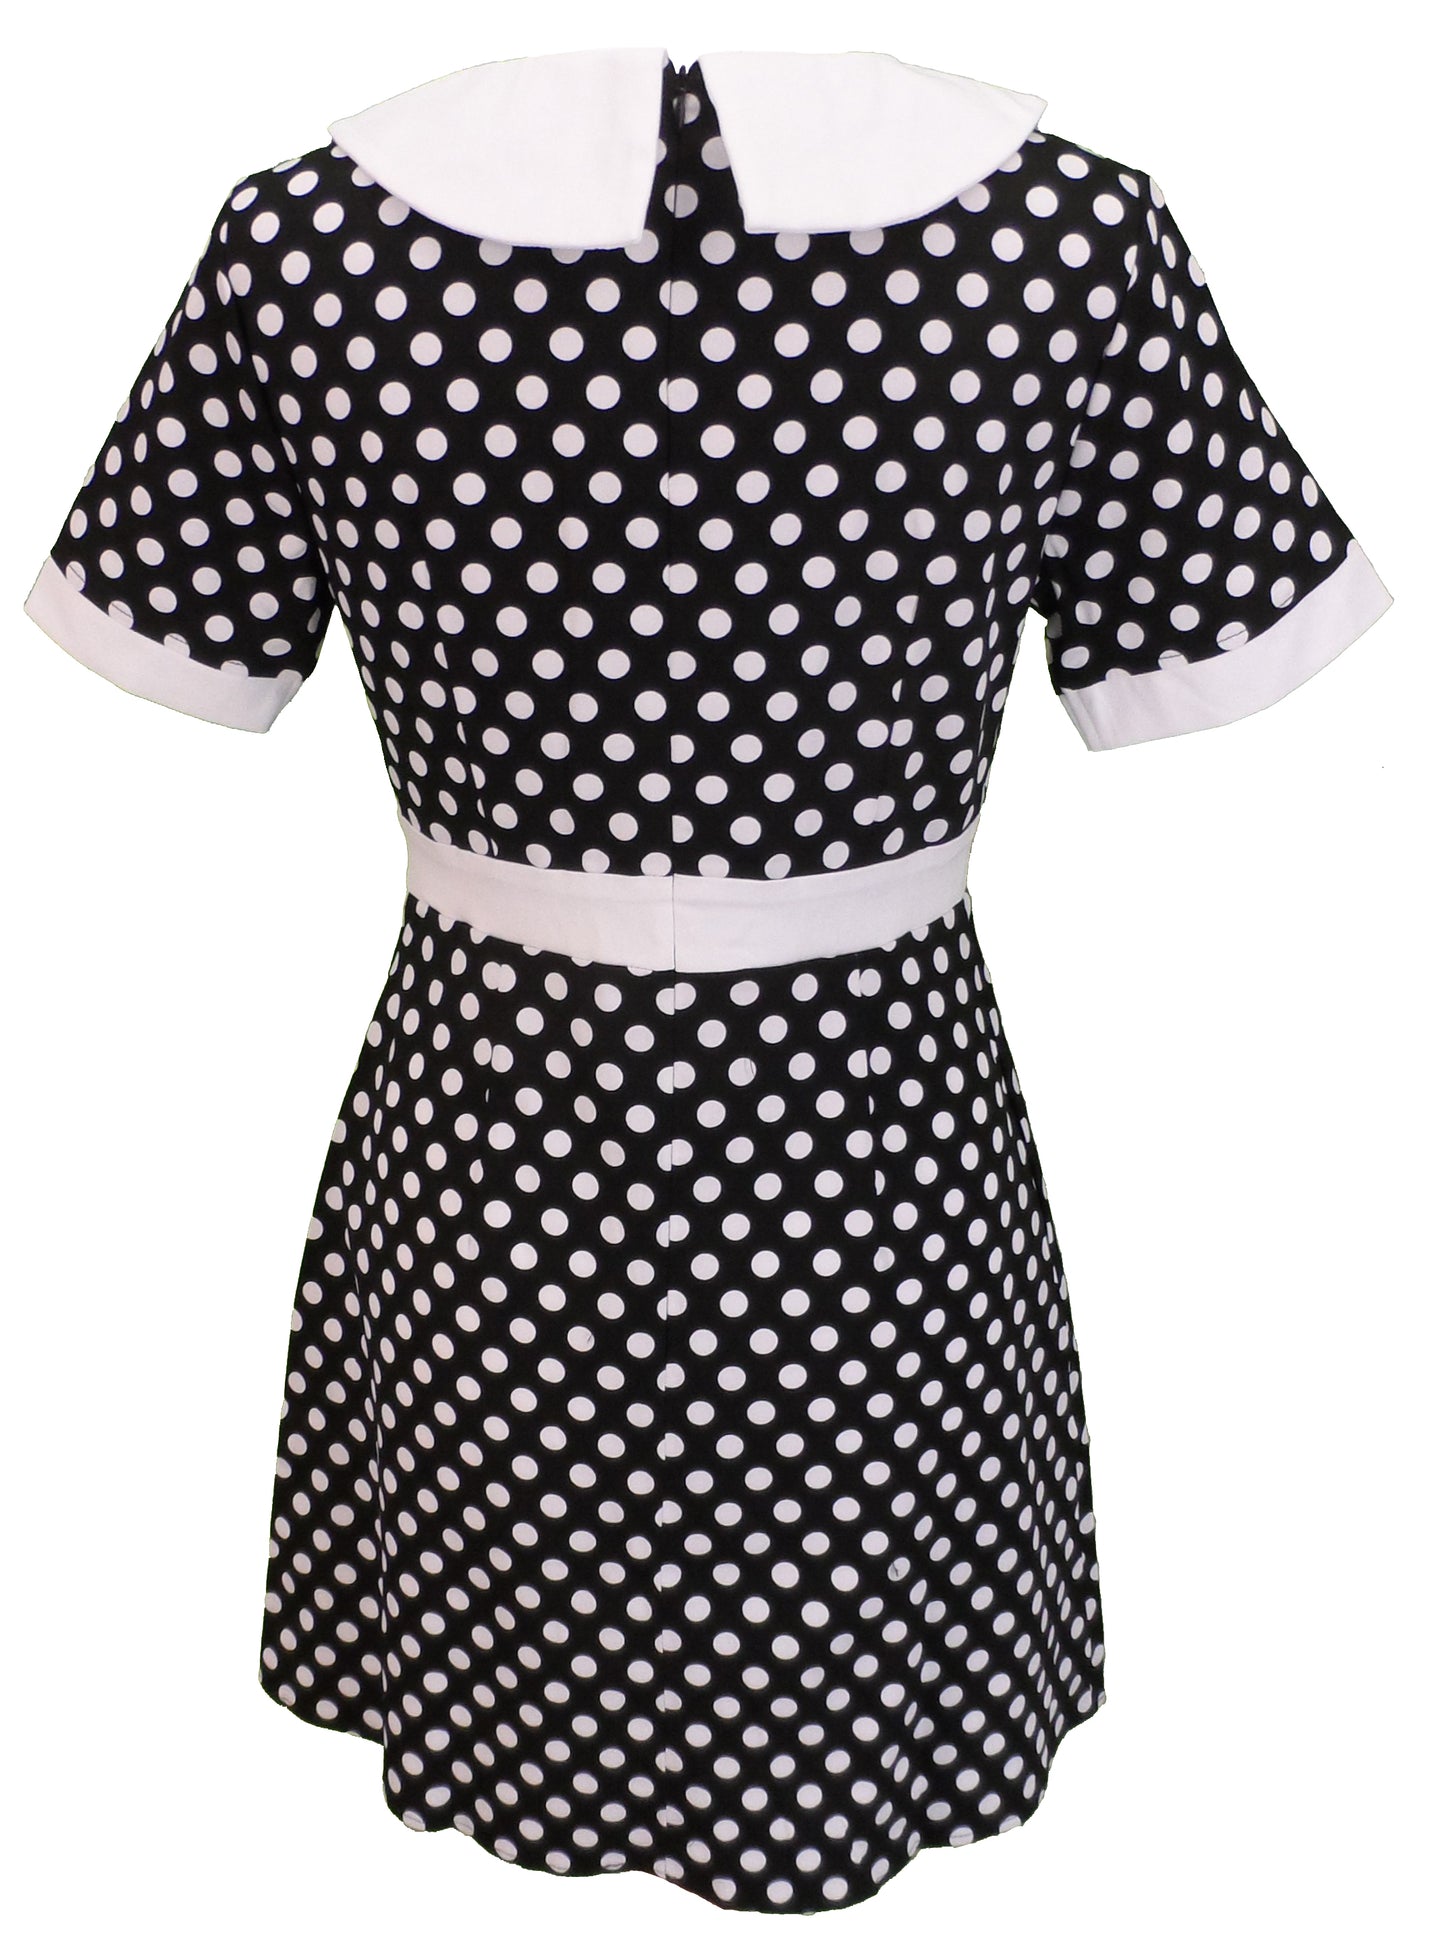 Vestido de lunares blanco y negro retro mod vintage de los años 60 para mujer